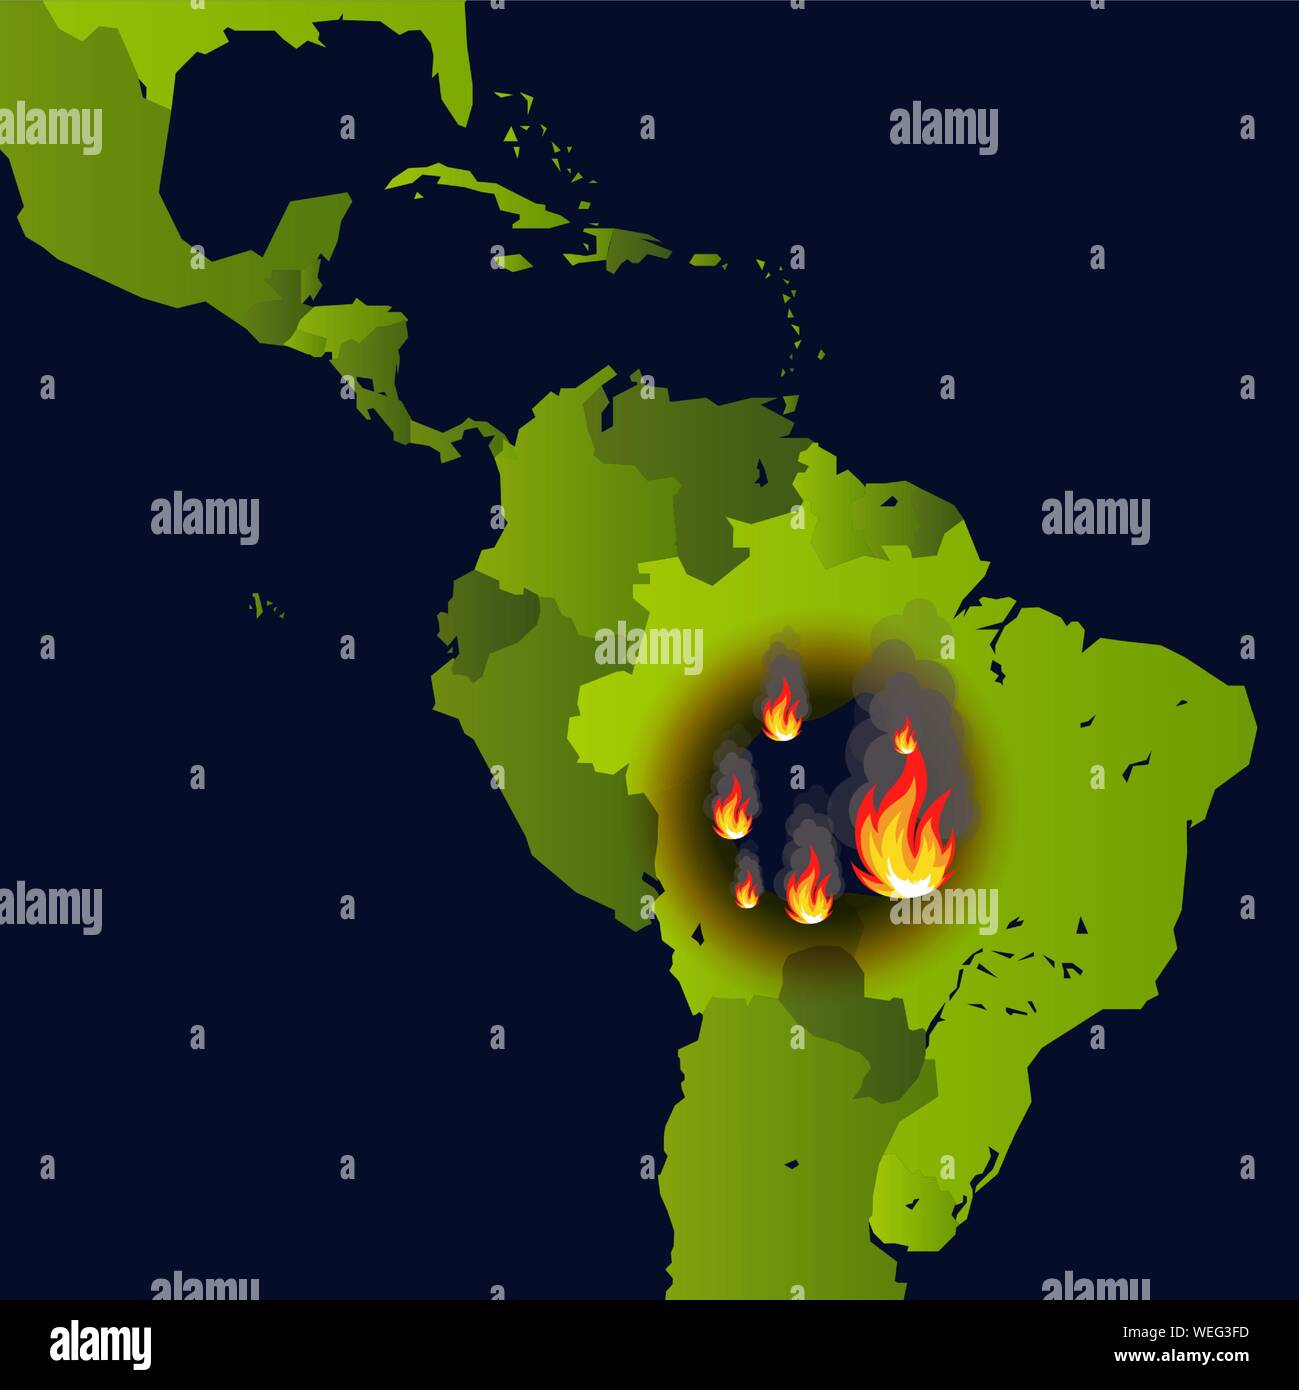 Waldbrände Banner, Kamin auf Karte, Disaster in Südamerika News, Papier, das brennt raucht und Qualmt aus Feuer, Vector Illustration. Stock Vektor